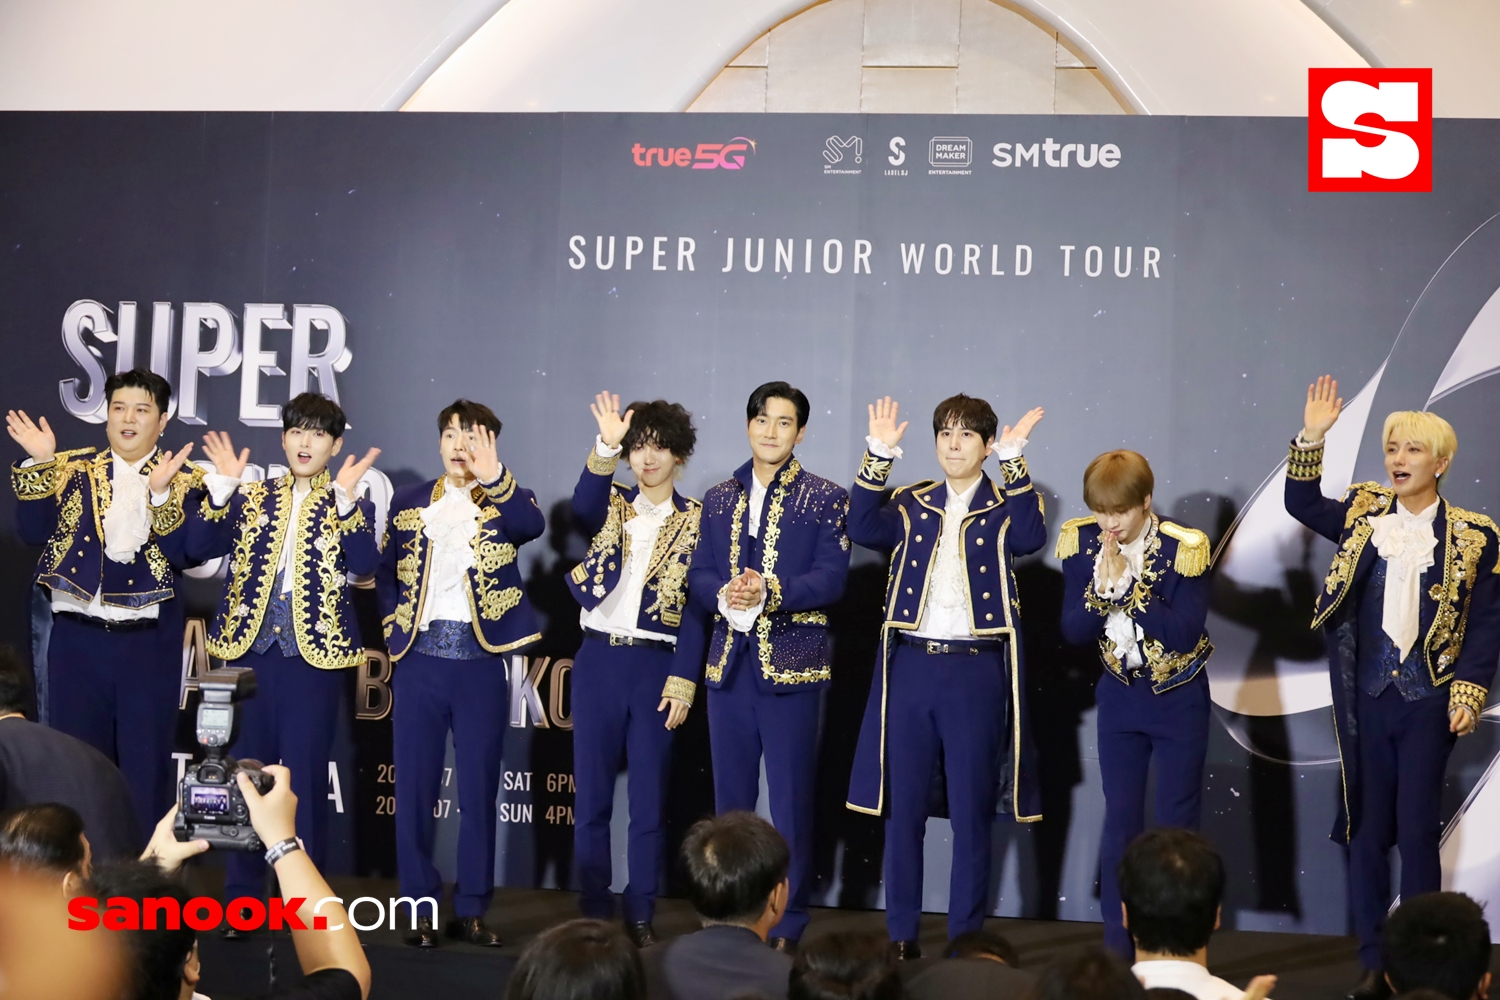 งานแถลงข่าว SUPER JUNIOR WORLD TOUR - SUPER SHOW 9 : ROAD in BANGKOK